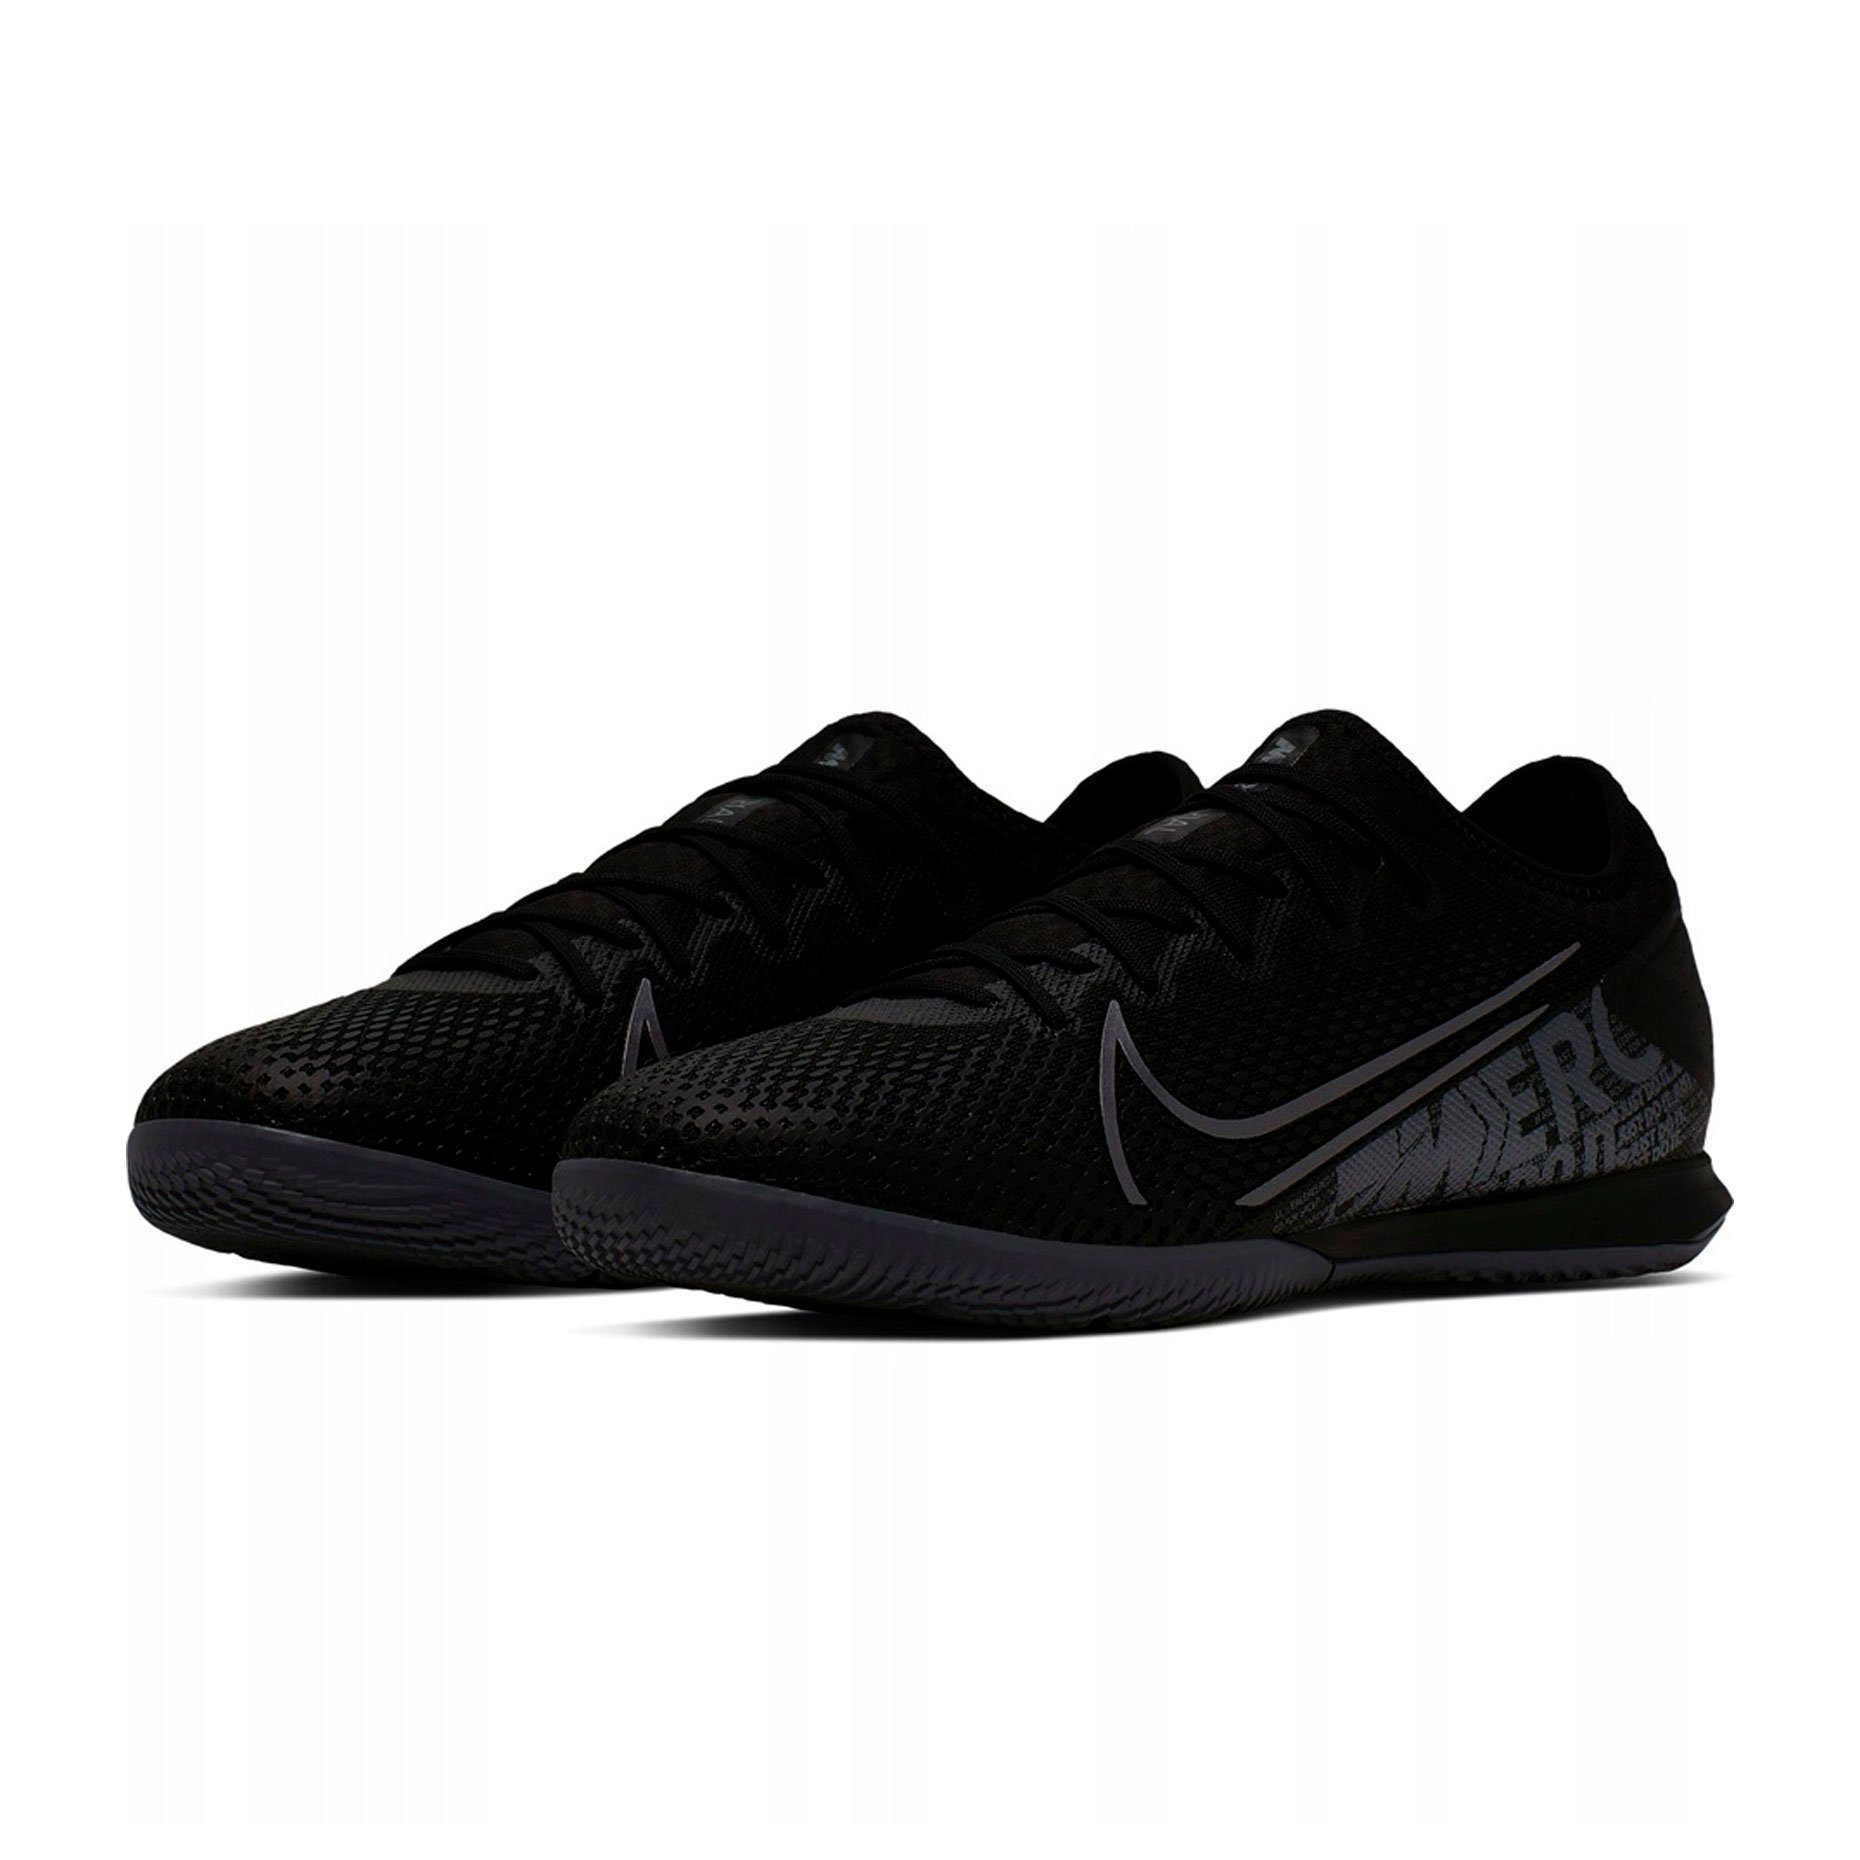 Игровая обувь для зала Nike Mercurial Vapor 13 Pro IC